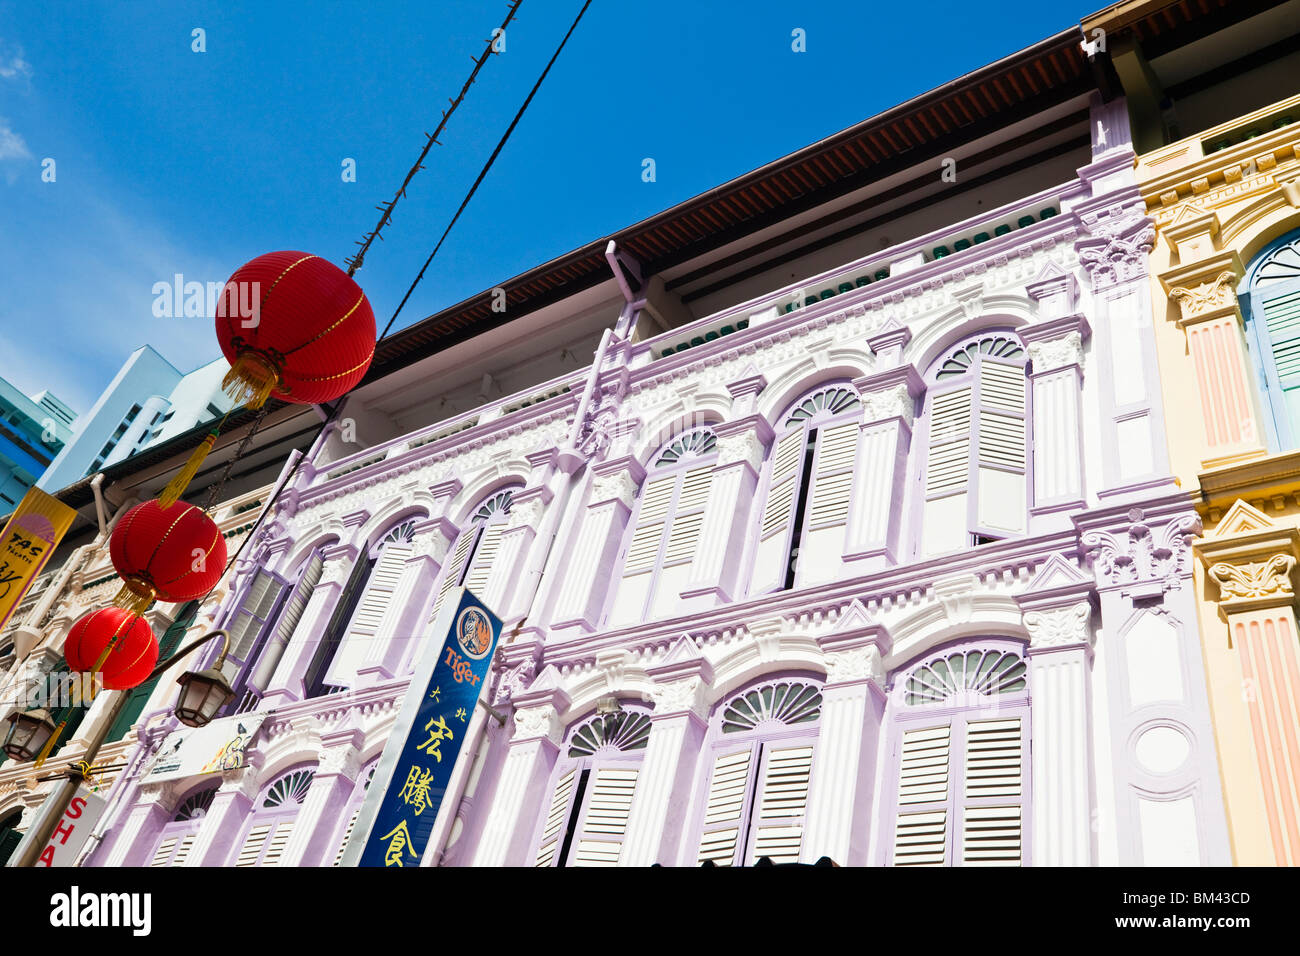 L'architecture coloniale colorée de Temple Street, Chinatown, Singapour Banque D'Images